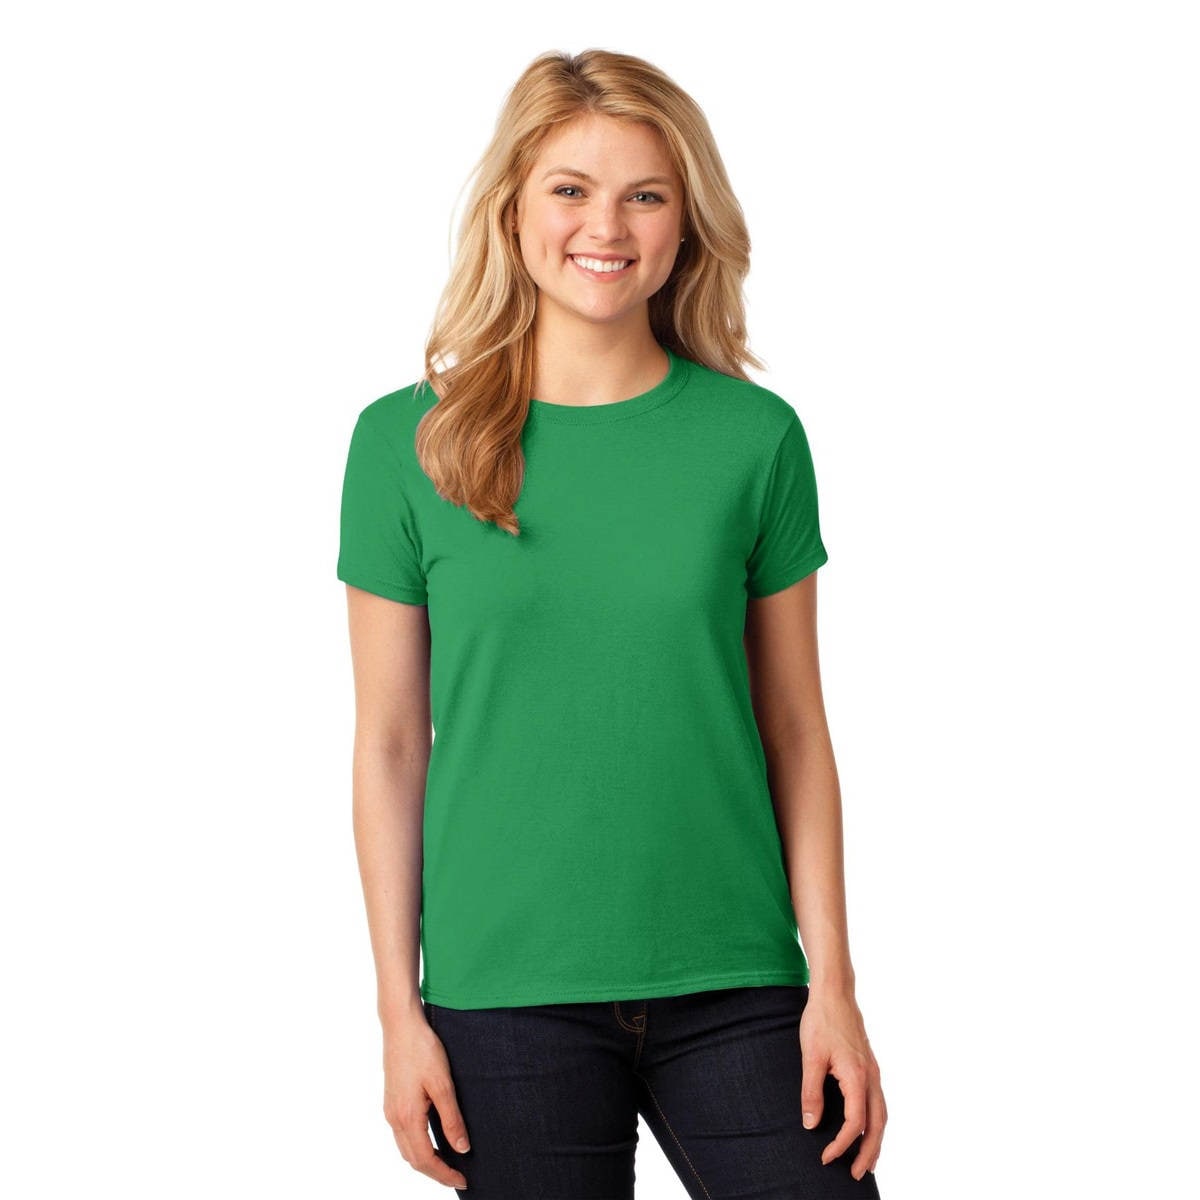 Women's St. Patricks Day Shirt, Here To Paddy, Lucky Irish Shirt, Shamrock, Green Shirt, Irish Tee, Funny